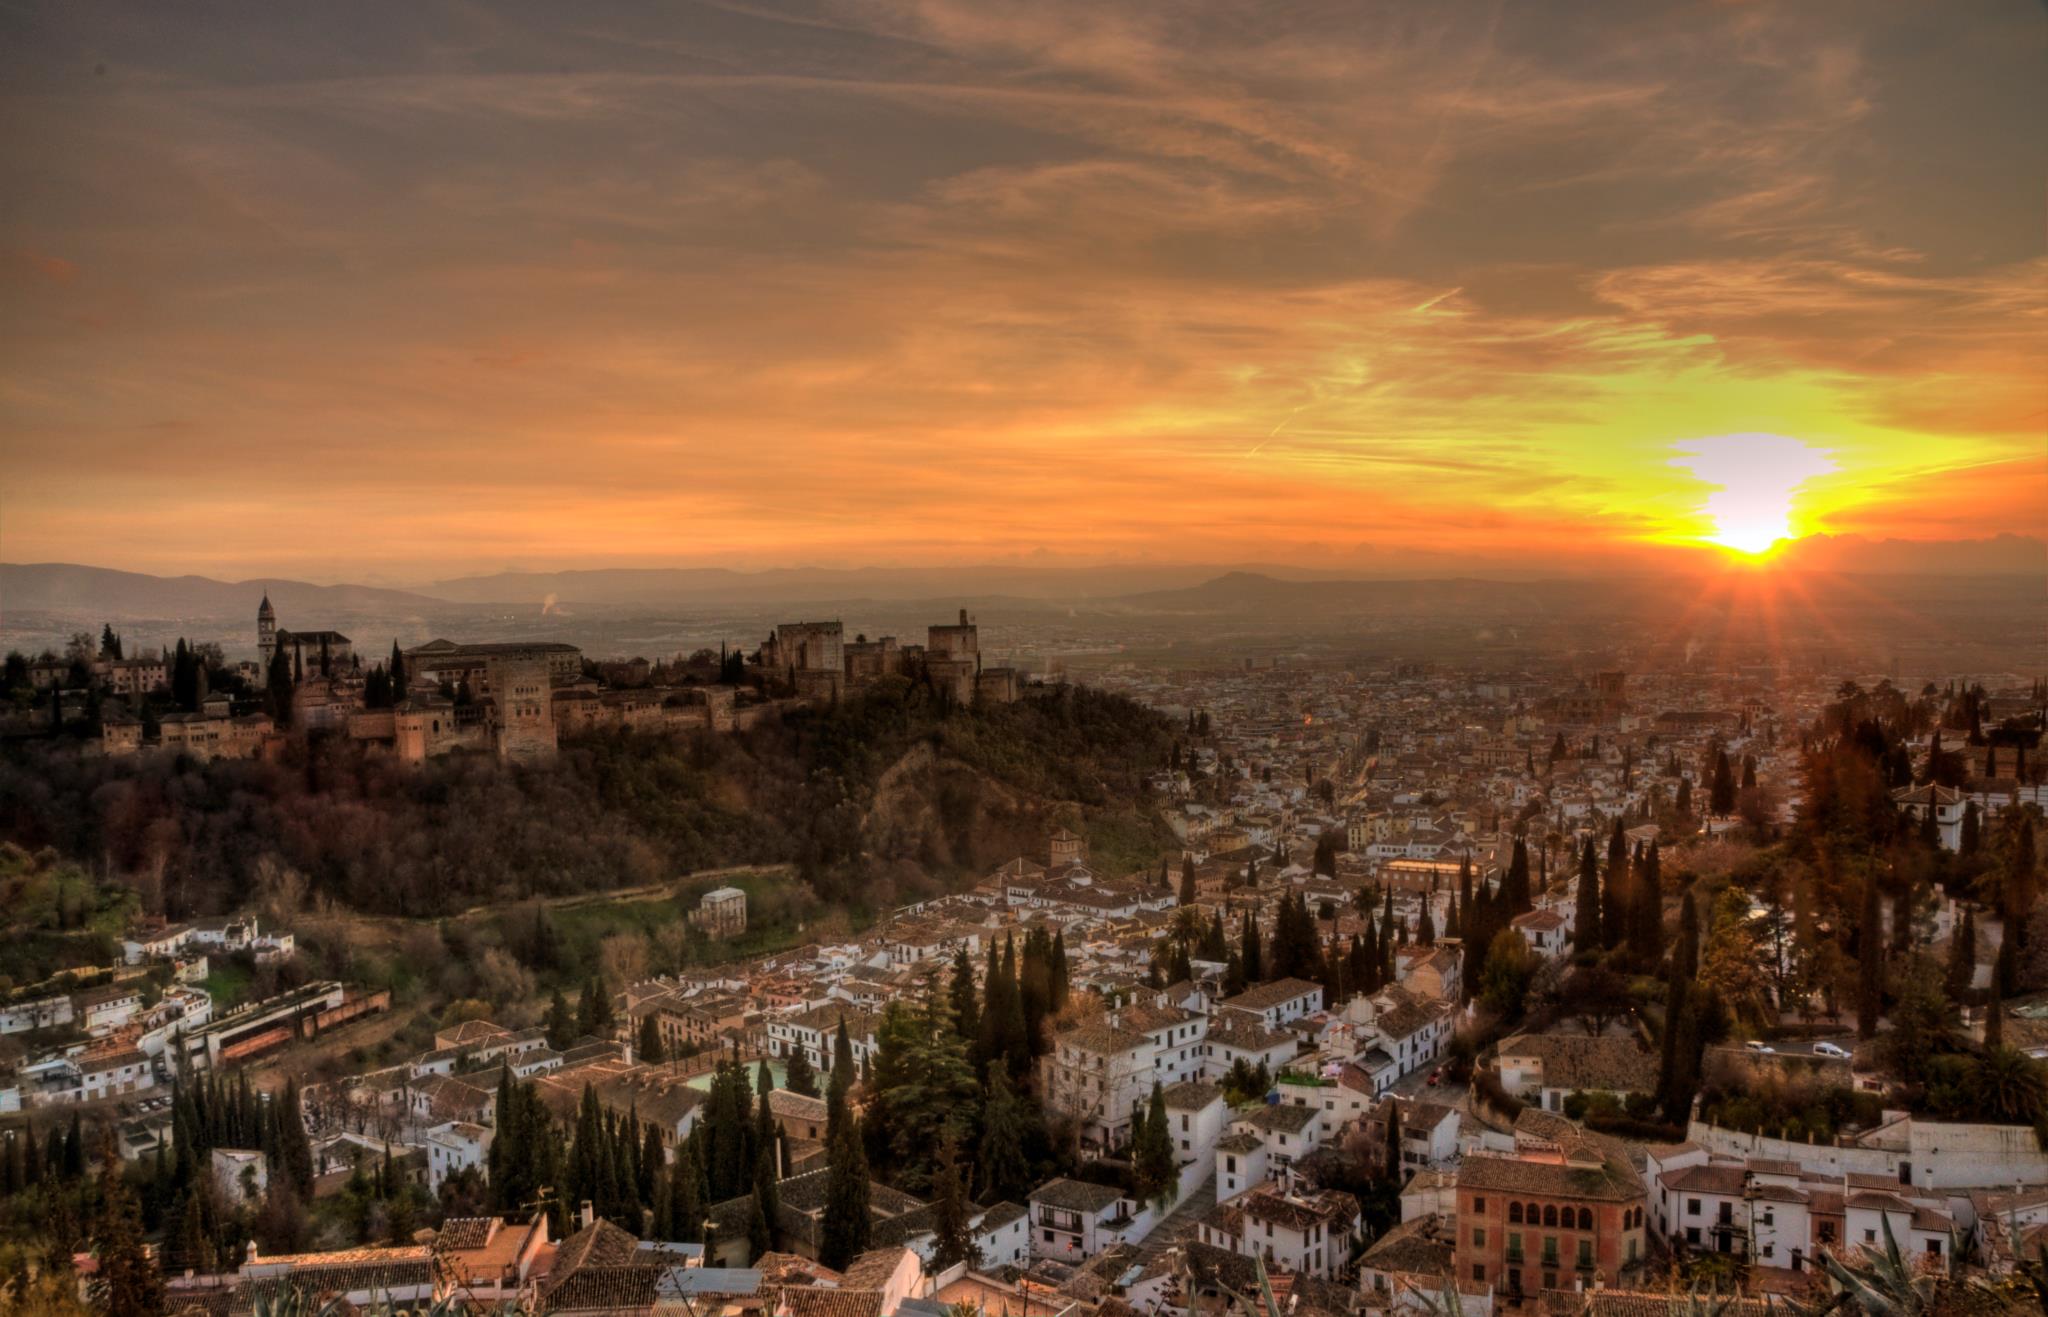 El 'Daily Telegraph' elige Granada como el 4º mejor destino del mundo en 2017